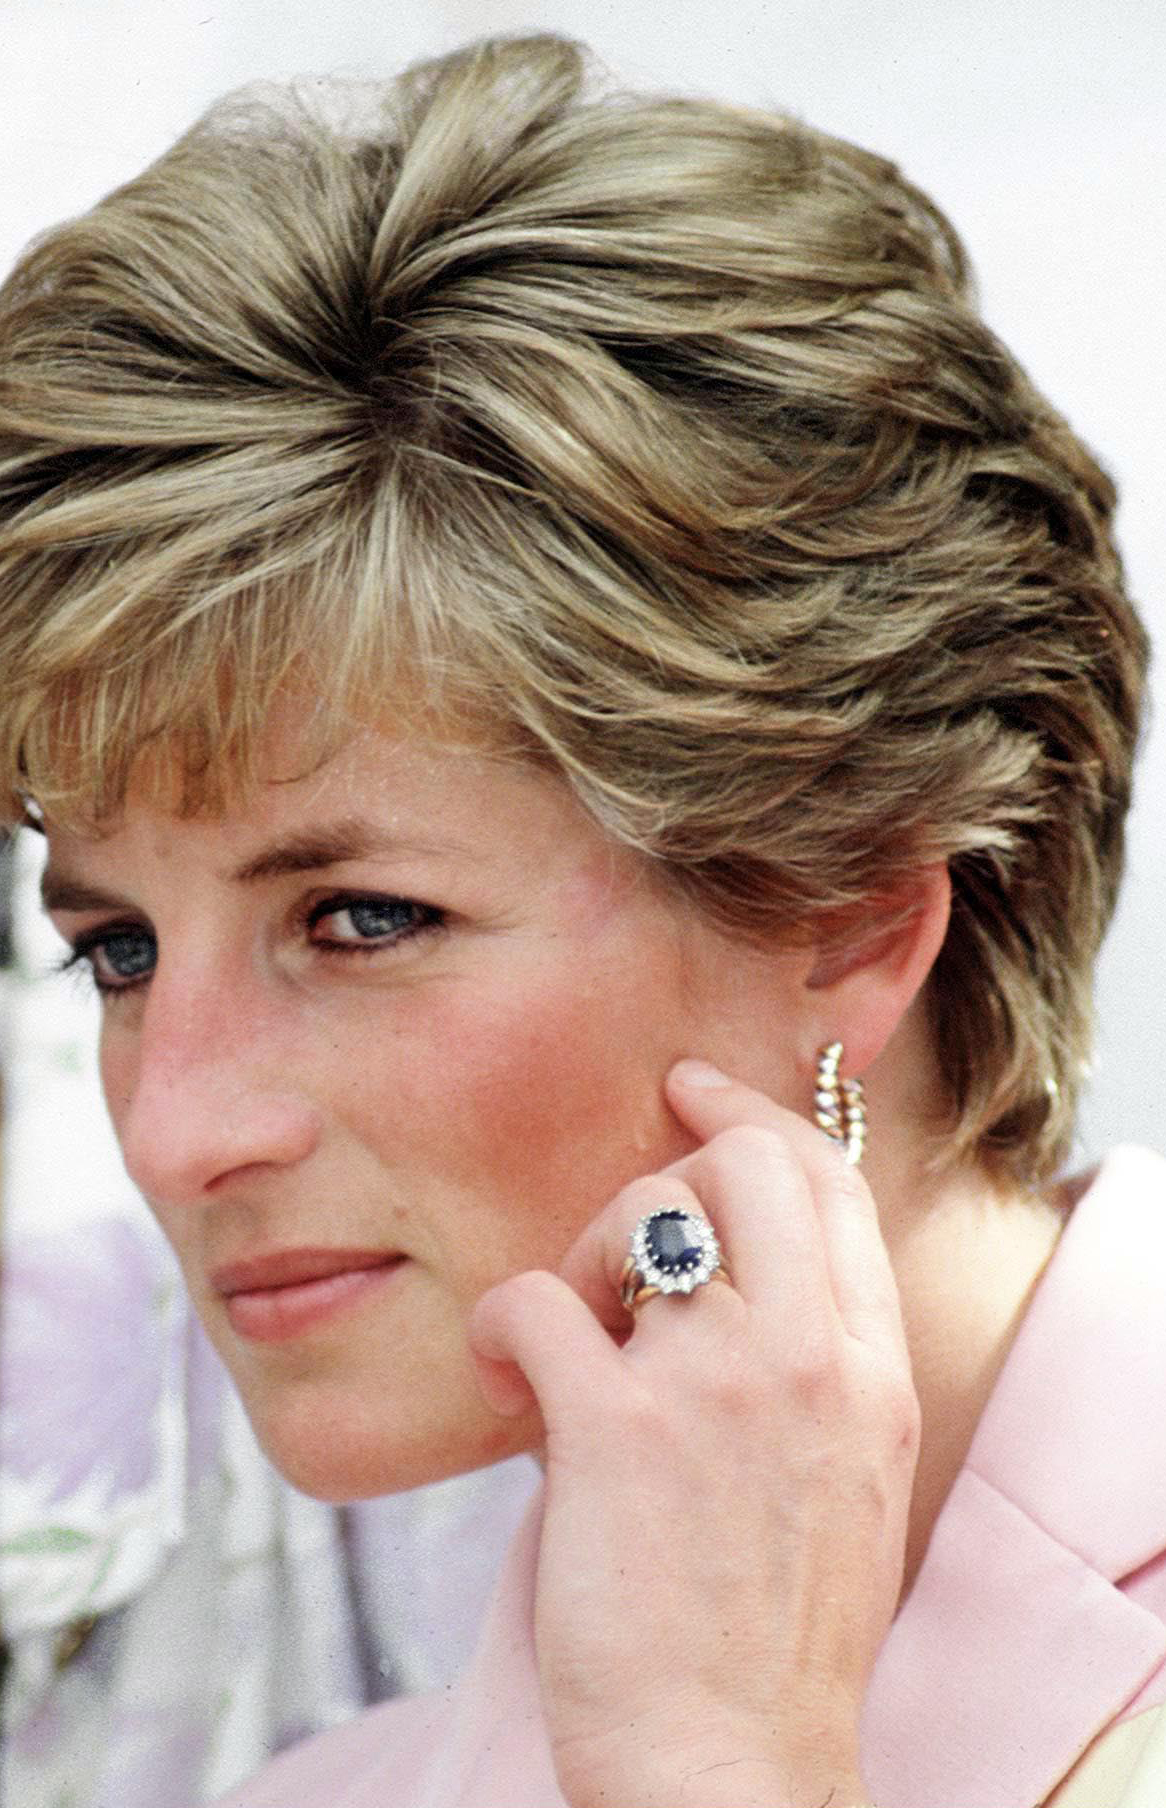 Katalin hercegné eljegyzési gyűrűjének elképesztően romantikus története  van - Glamour